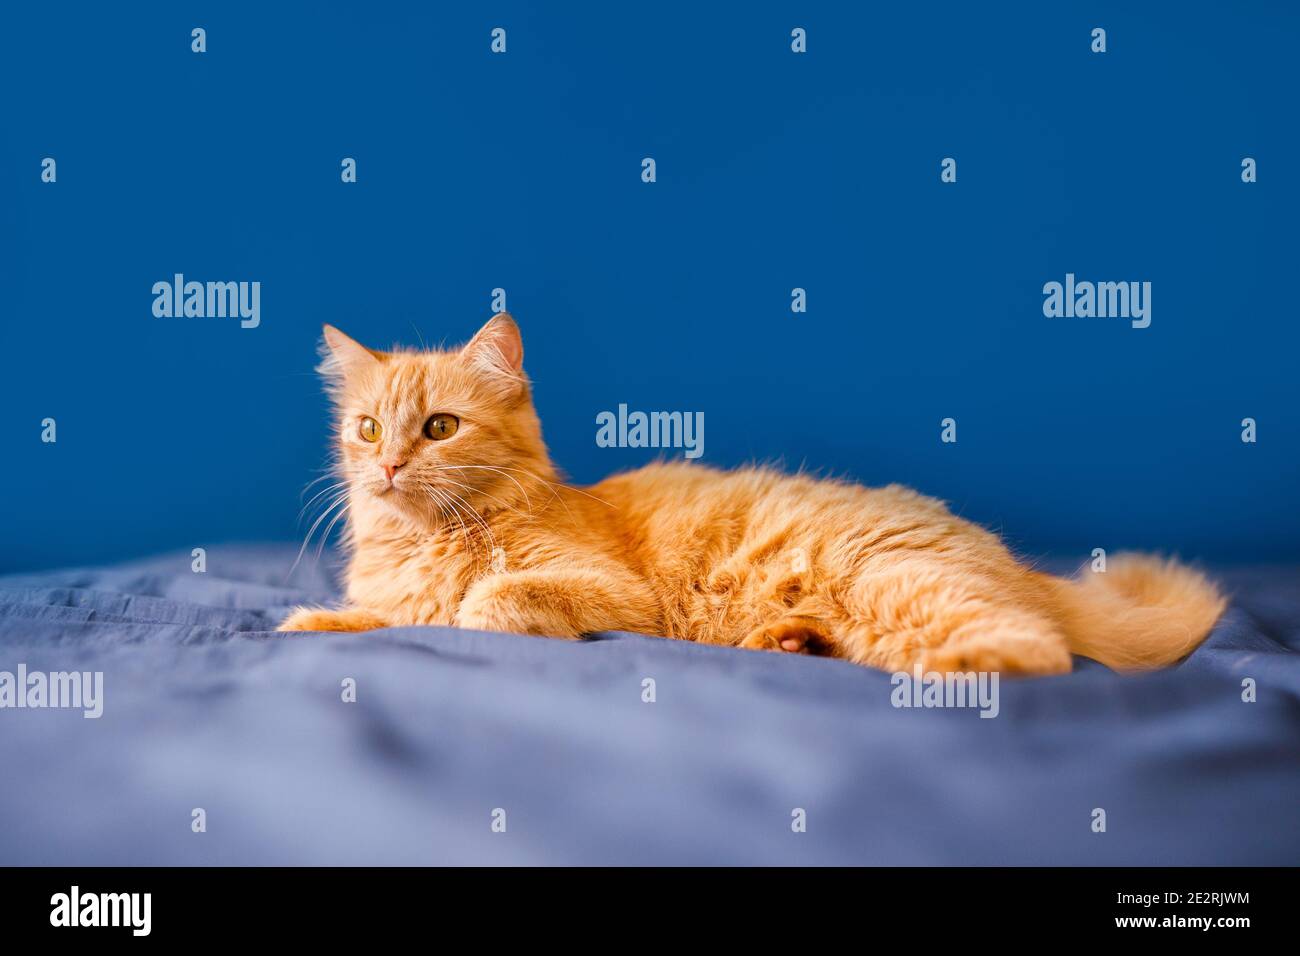 Eine rote, flauschige Hauskatze liegt auf einem Bett vor blauem Hintergrund. Stockfoto